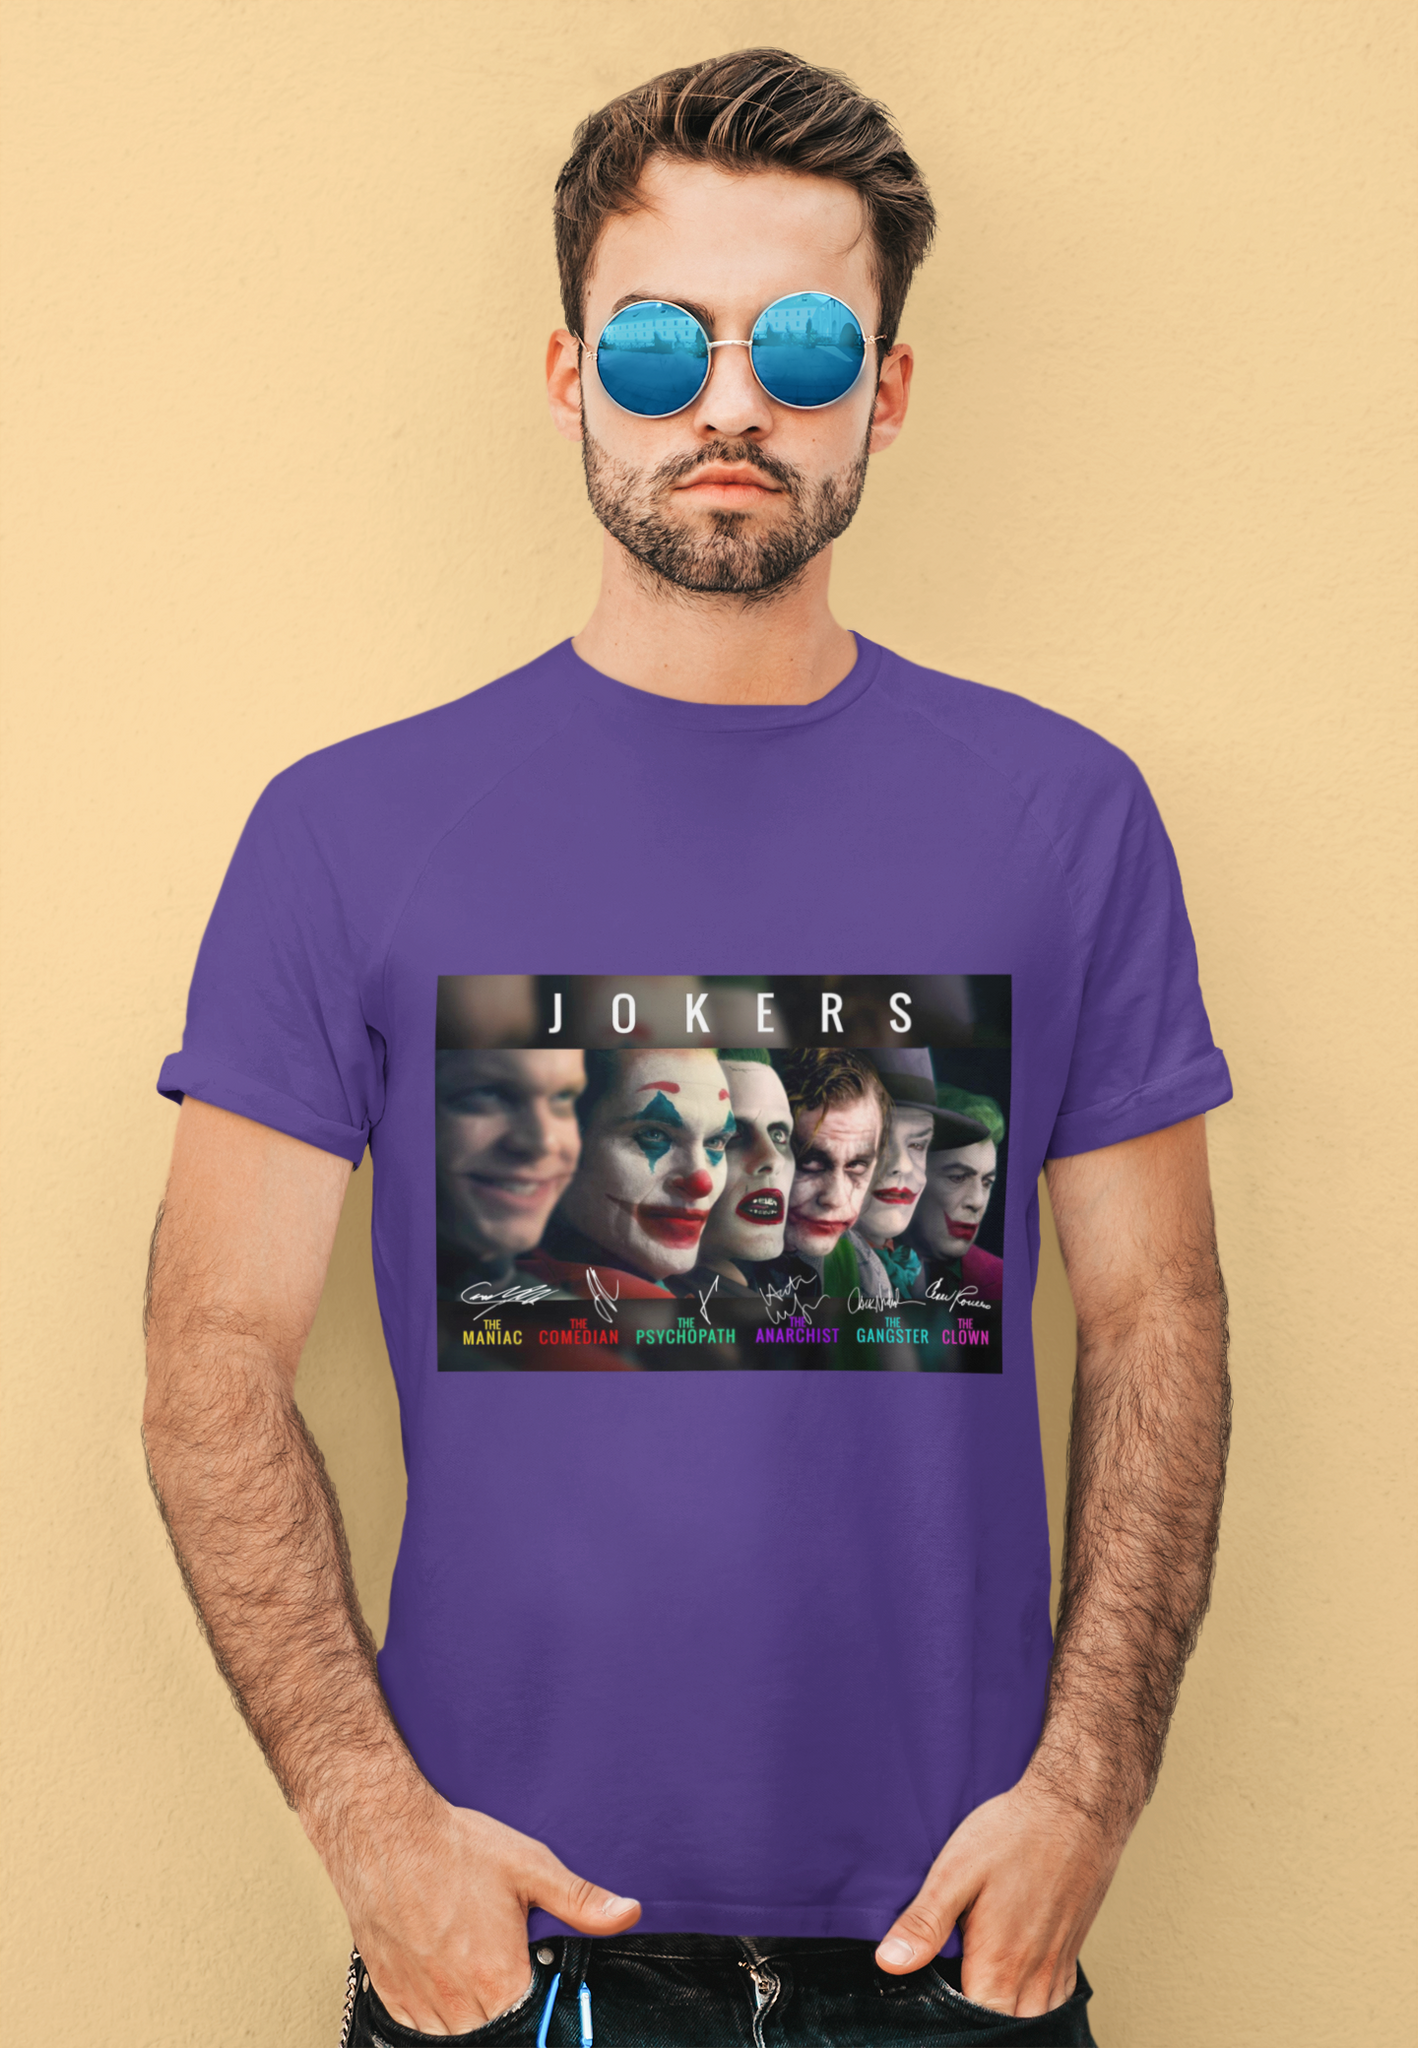 Joker T Shirt, Jokers The Maniac Comedian Psychopath Anarchist Clown Gangster T Shirt, Halloween Gifts